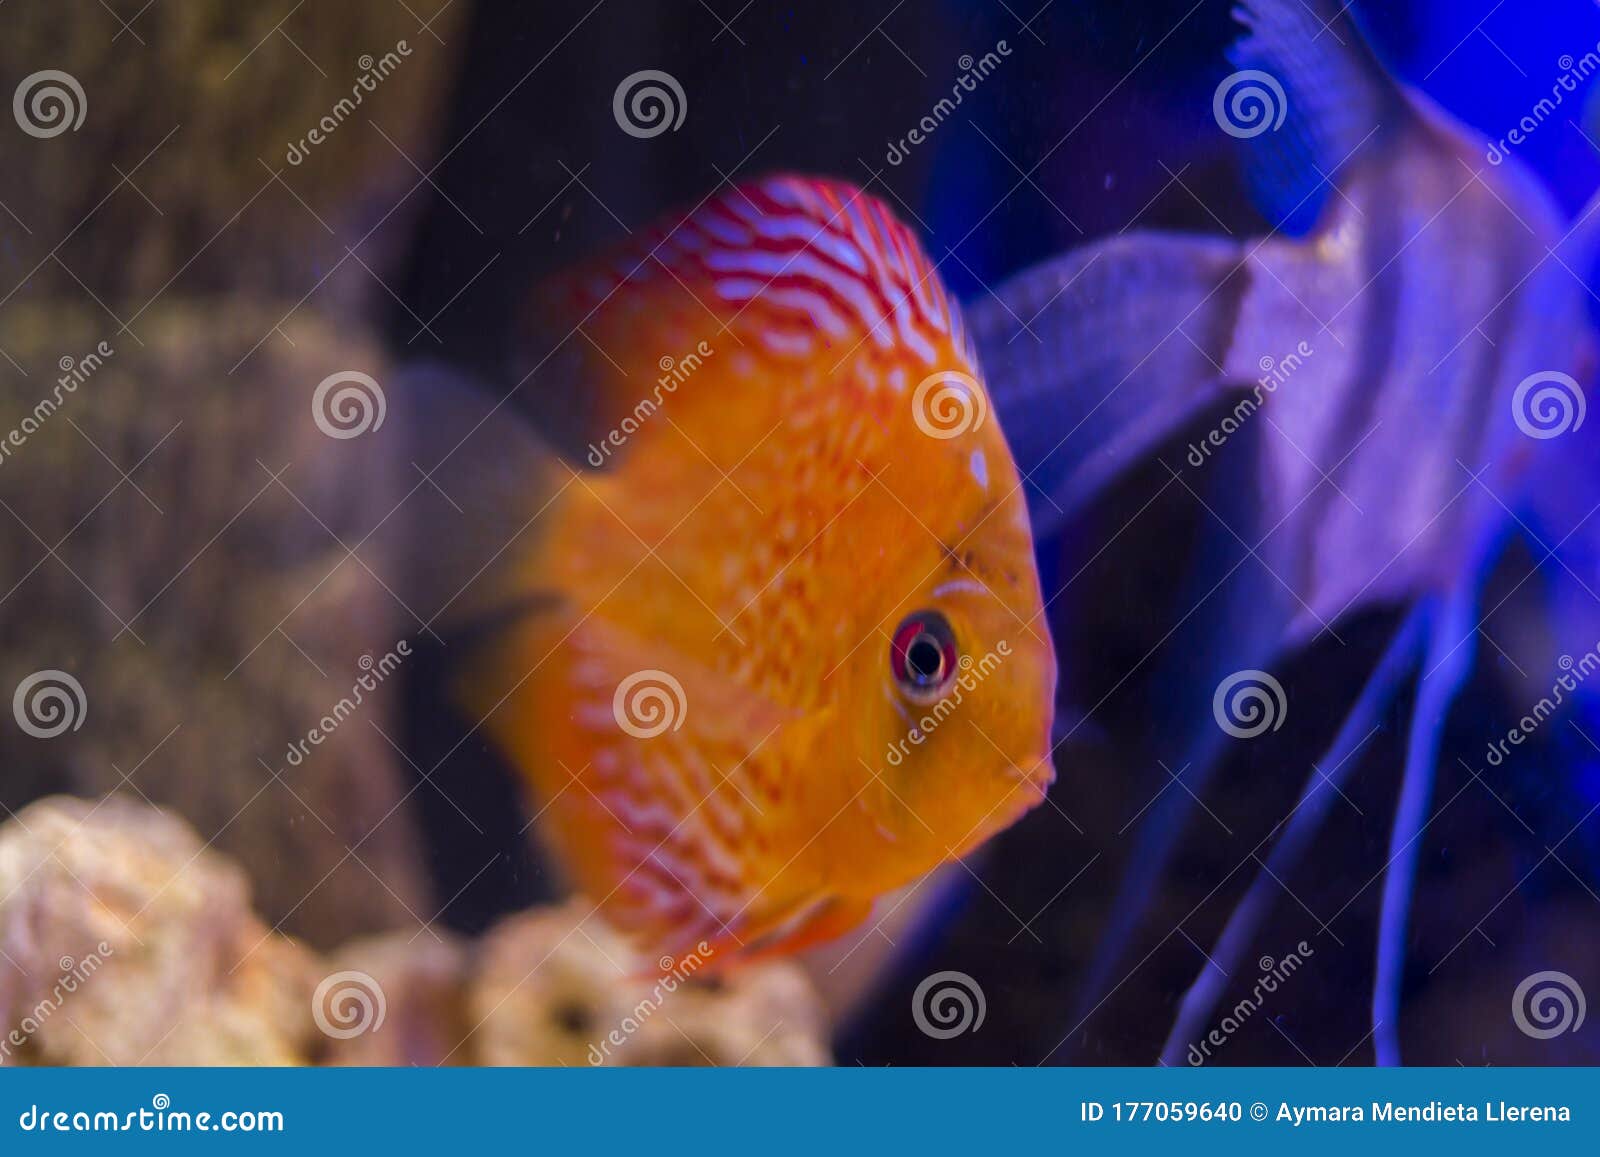 coral discus fish in the aquarium